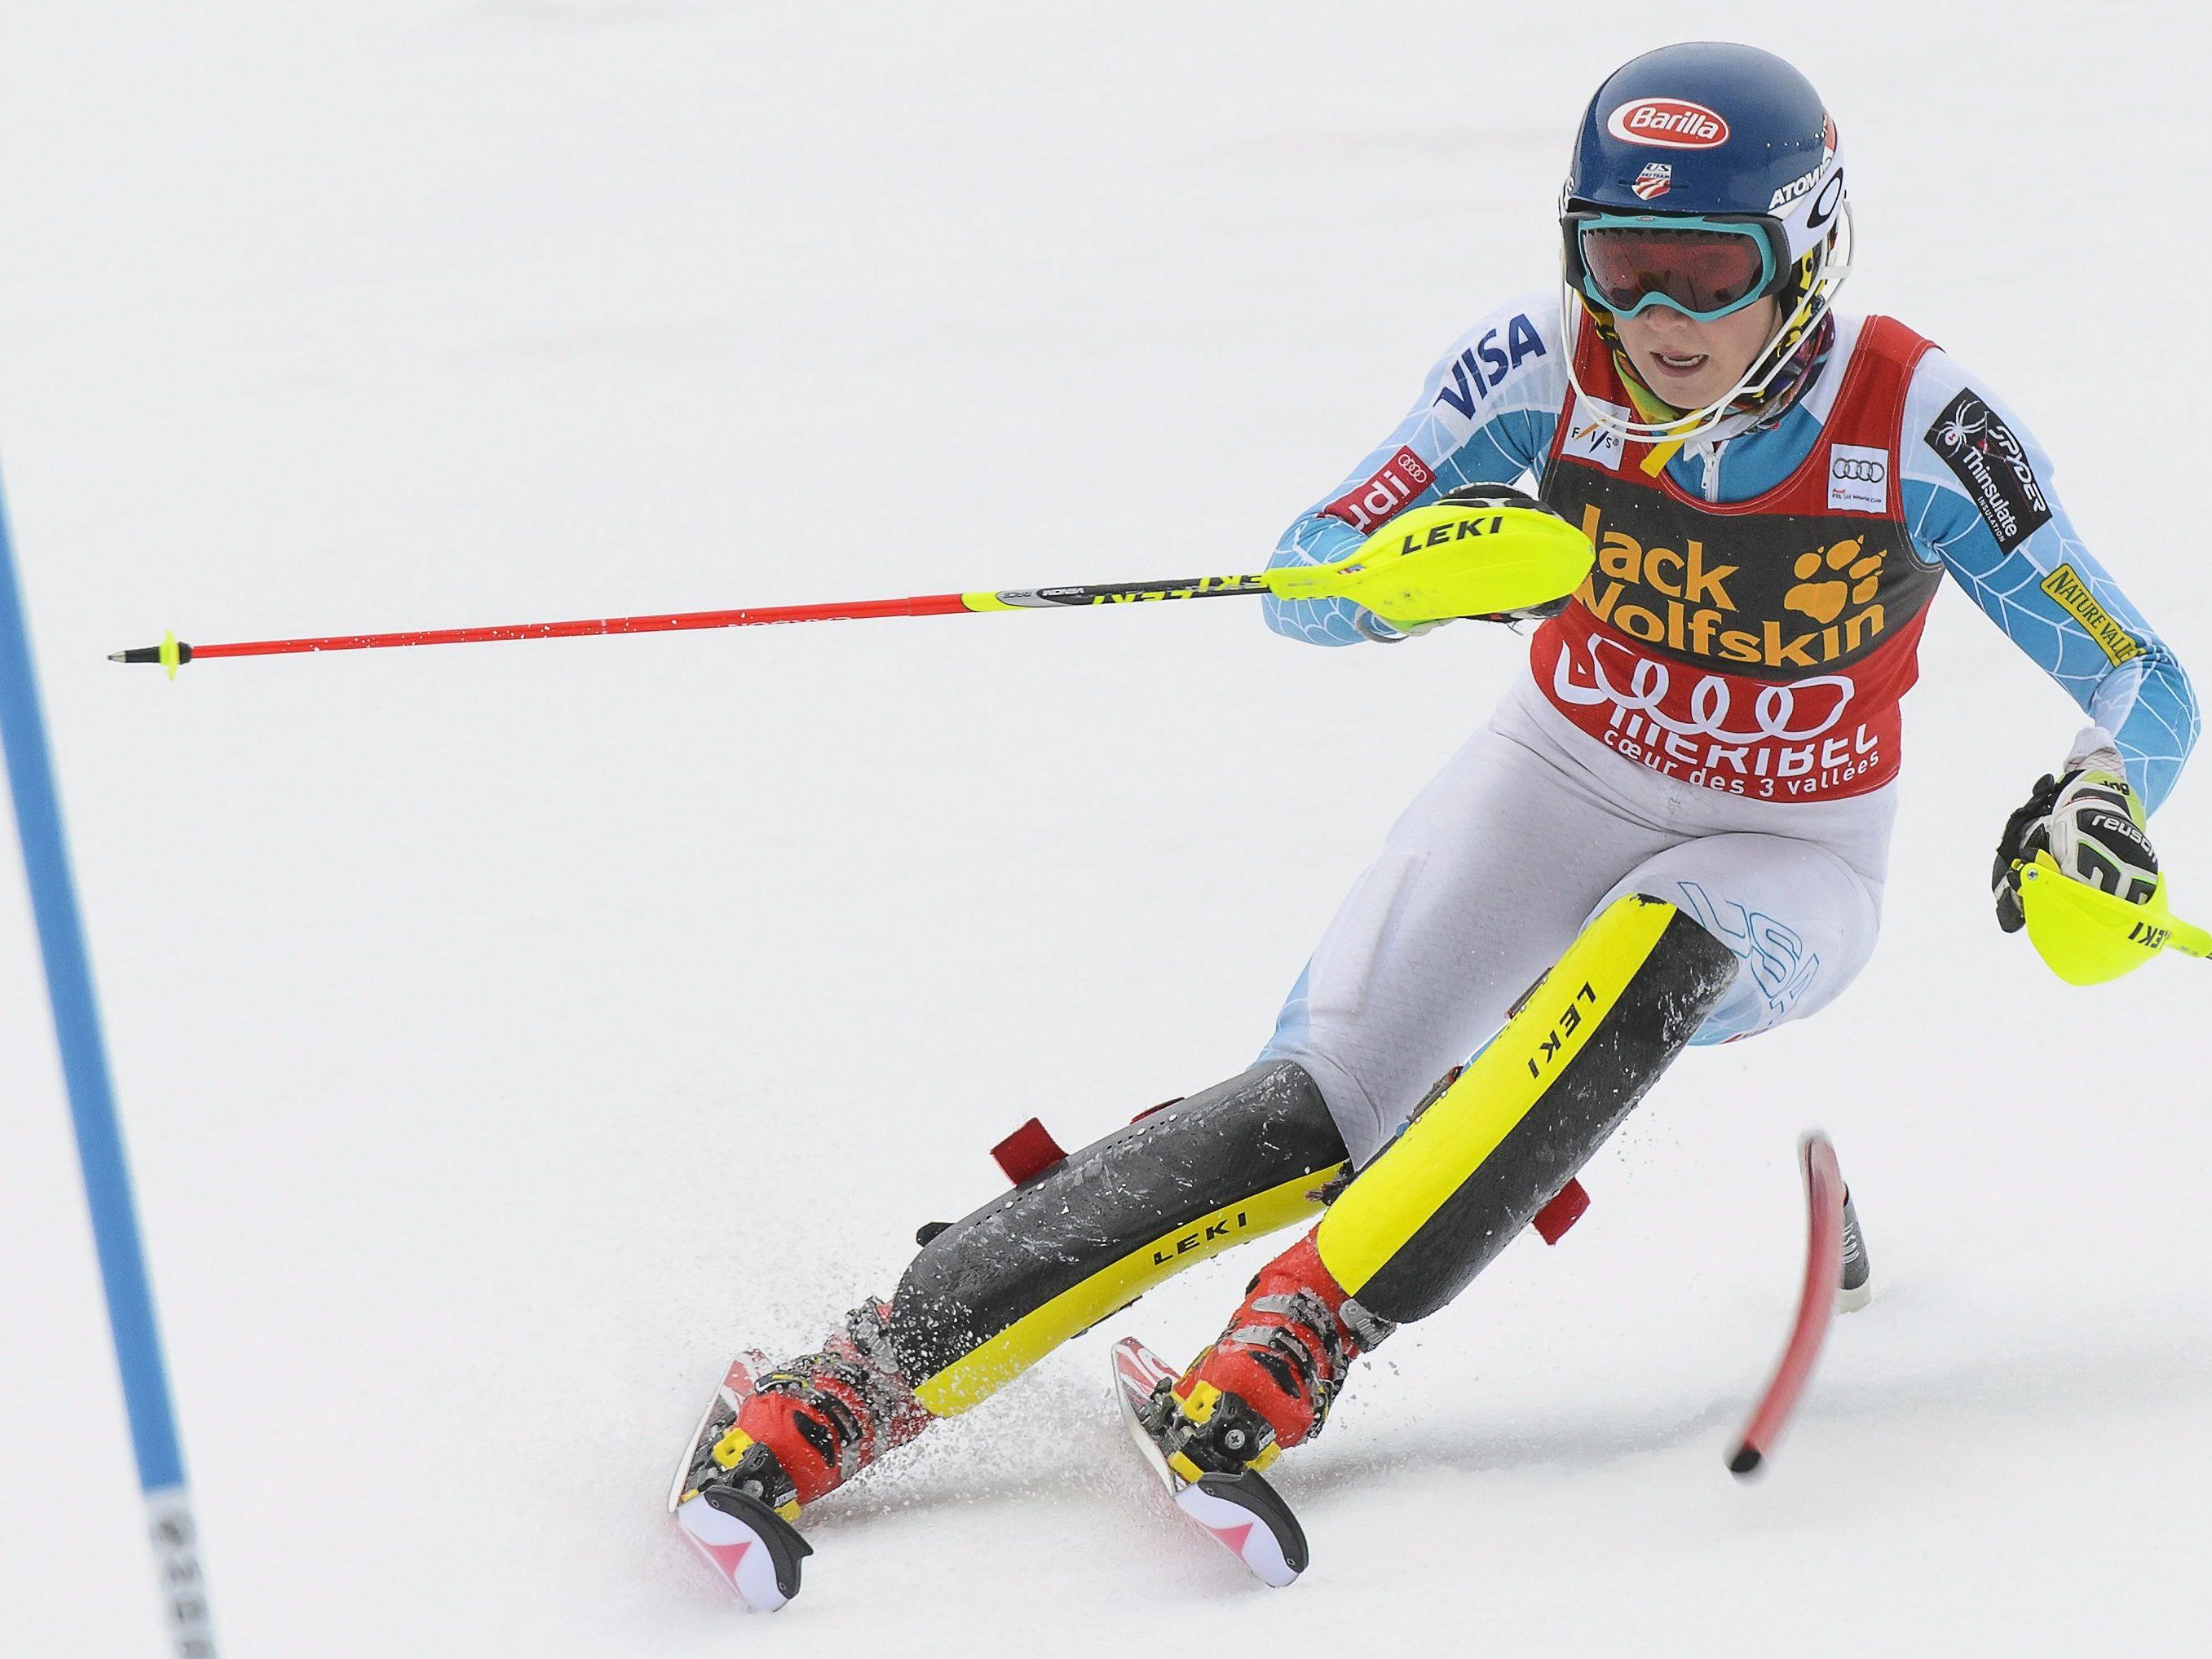 Die US-Amerikanerin sicherte sich mit ihrem 15. Weltcup-Sieg, dem 14. im Slalom, auch zum dritten Mal in Folge die kleine Kristallkugel für den Gewinn der Spezialwertung.